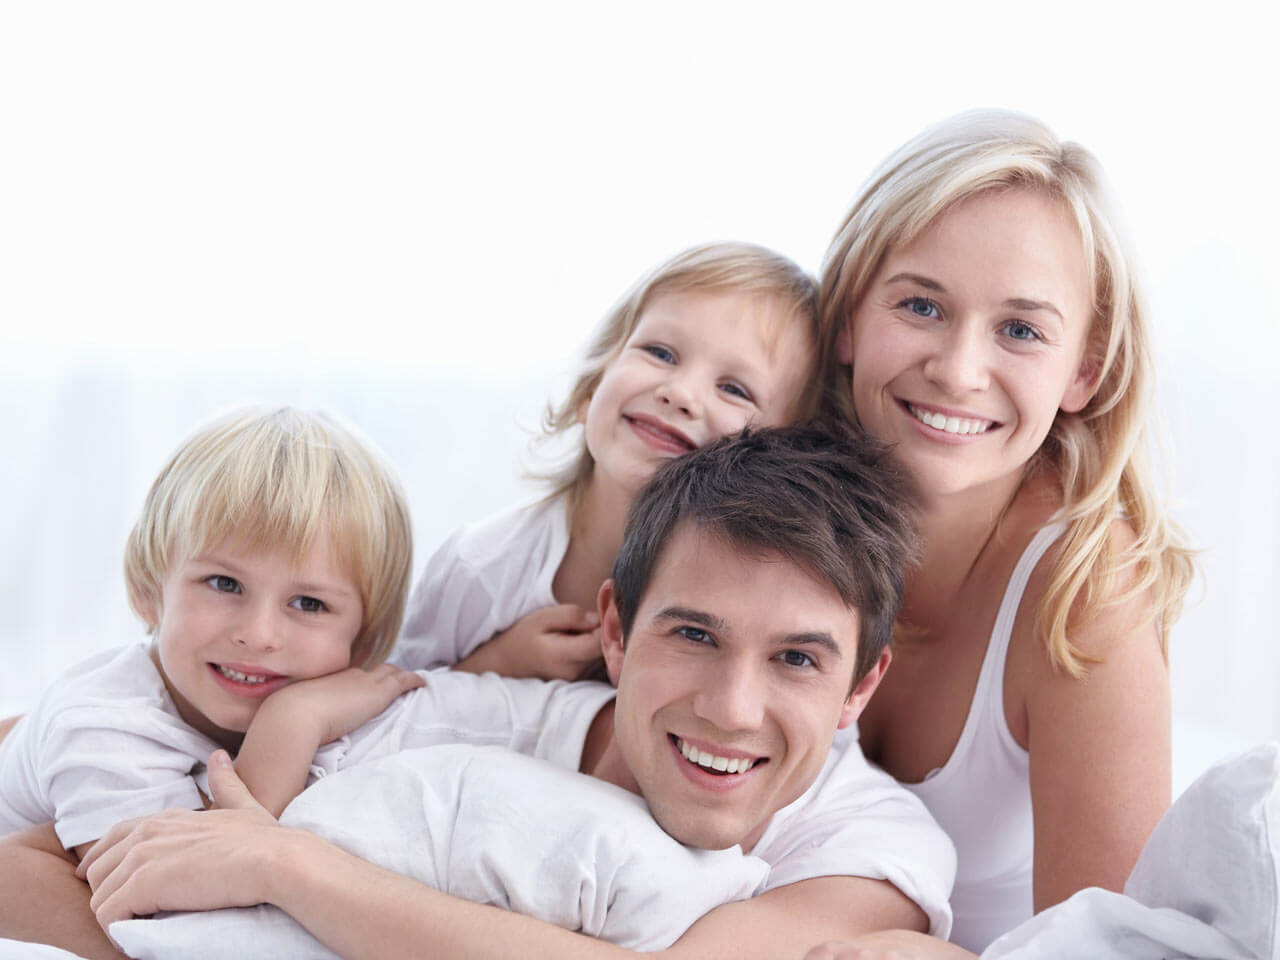 Всей семьей 18 результаты. Семья на белом фоне. Семья со счастливым ребёнком. Счастливая семья фото. Семья улыбается.